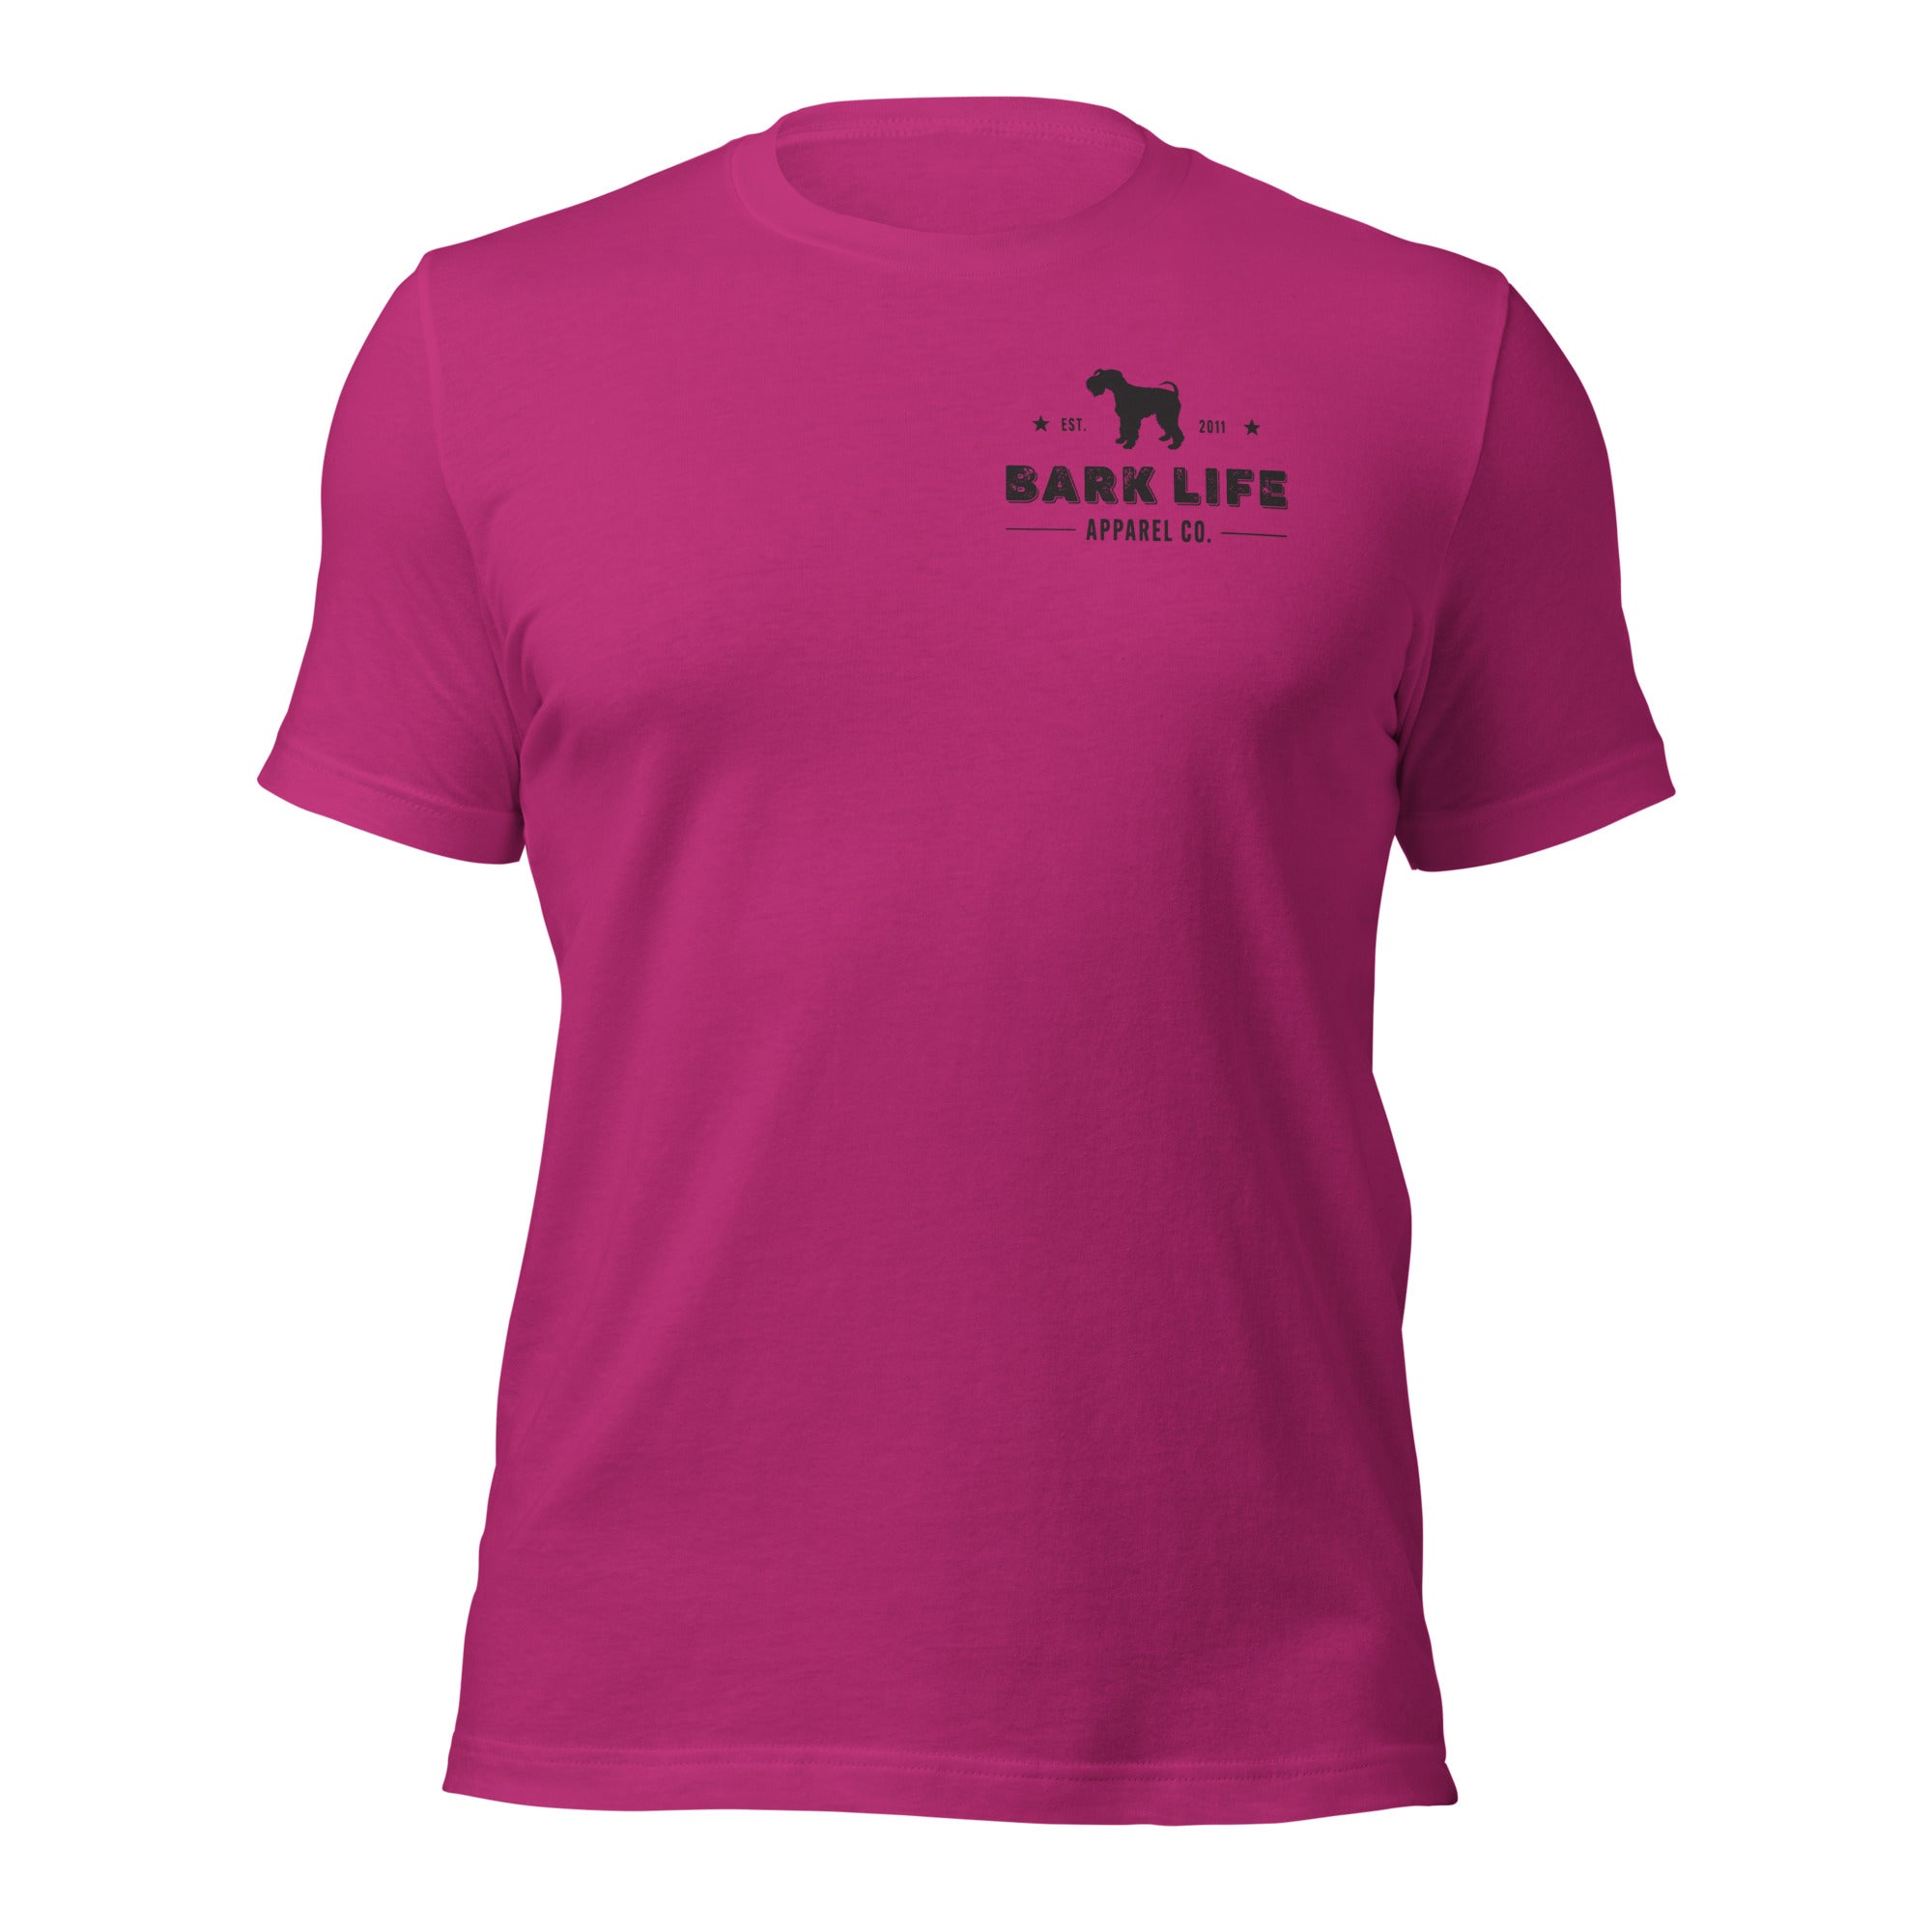 Kerry Blue Terrier - Short Sleeve Cotton Tee Shirt